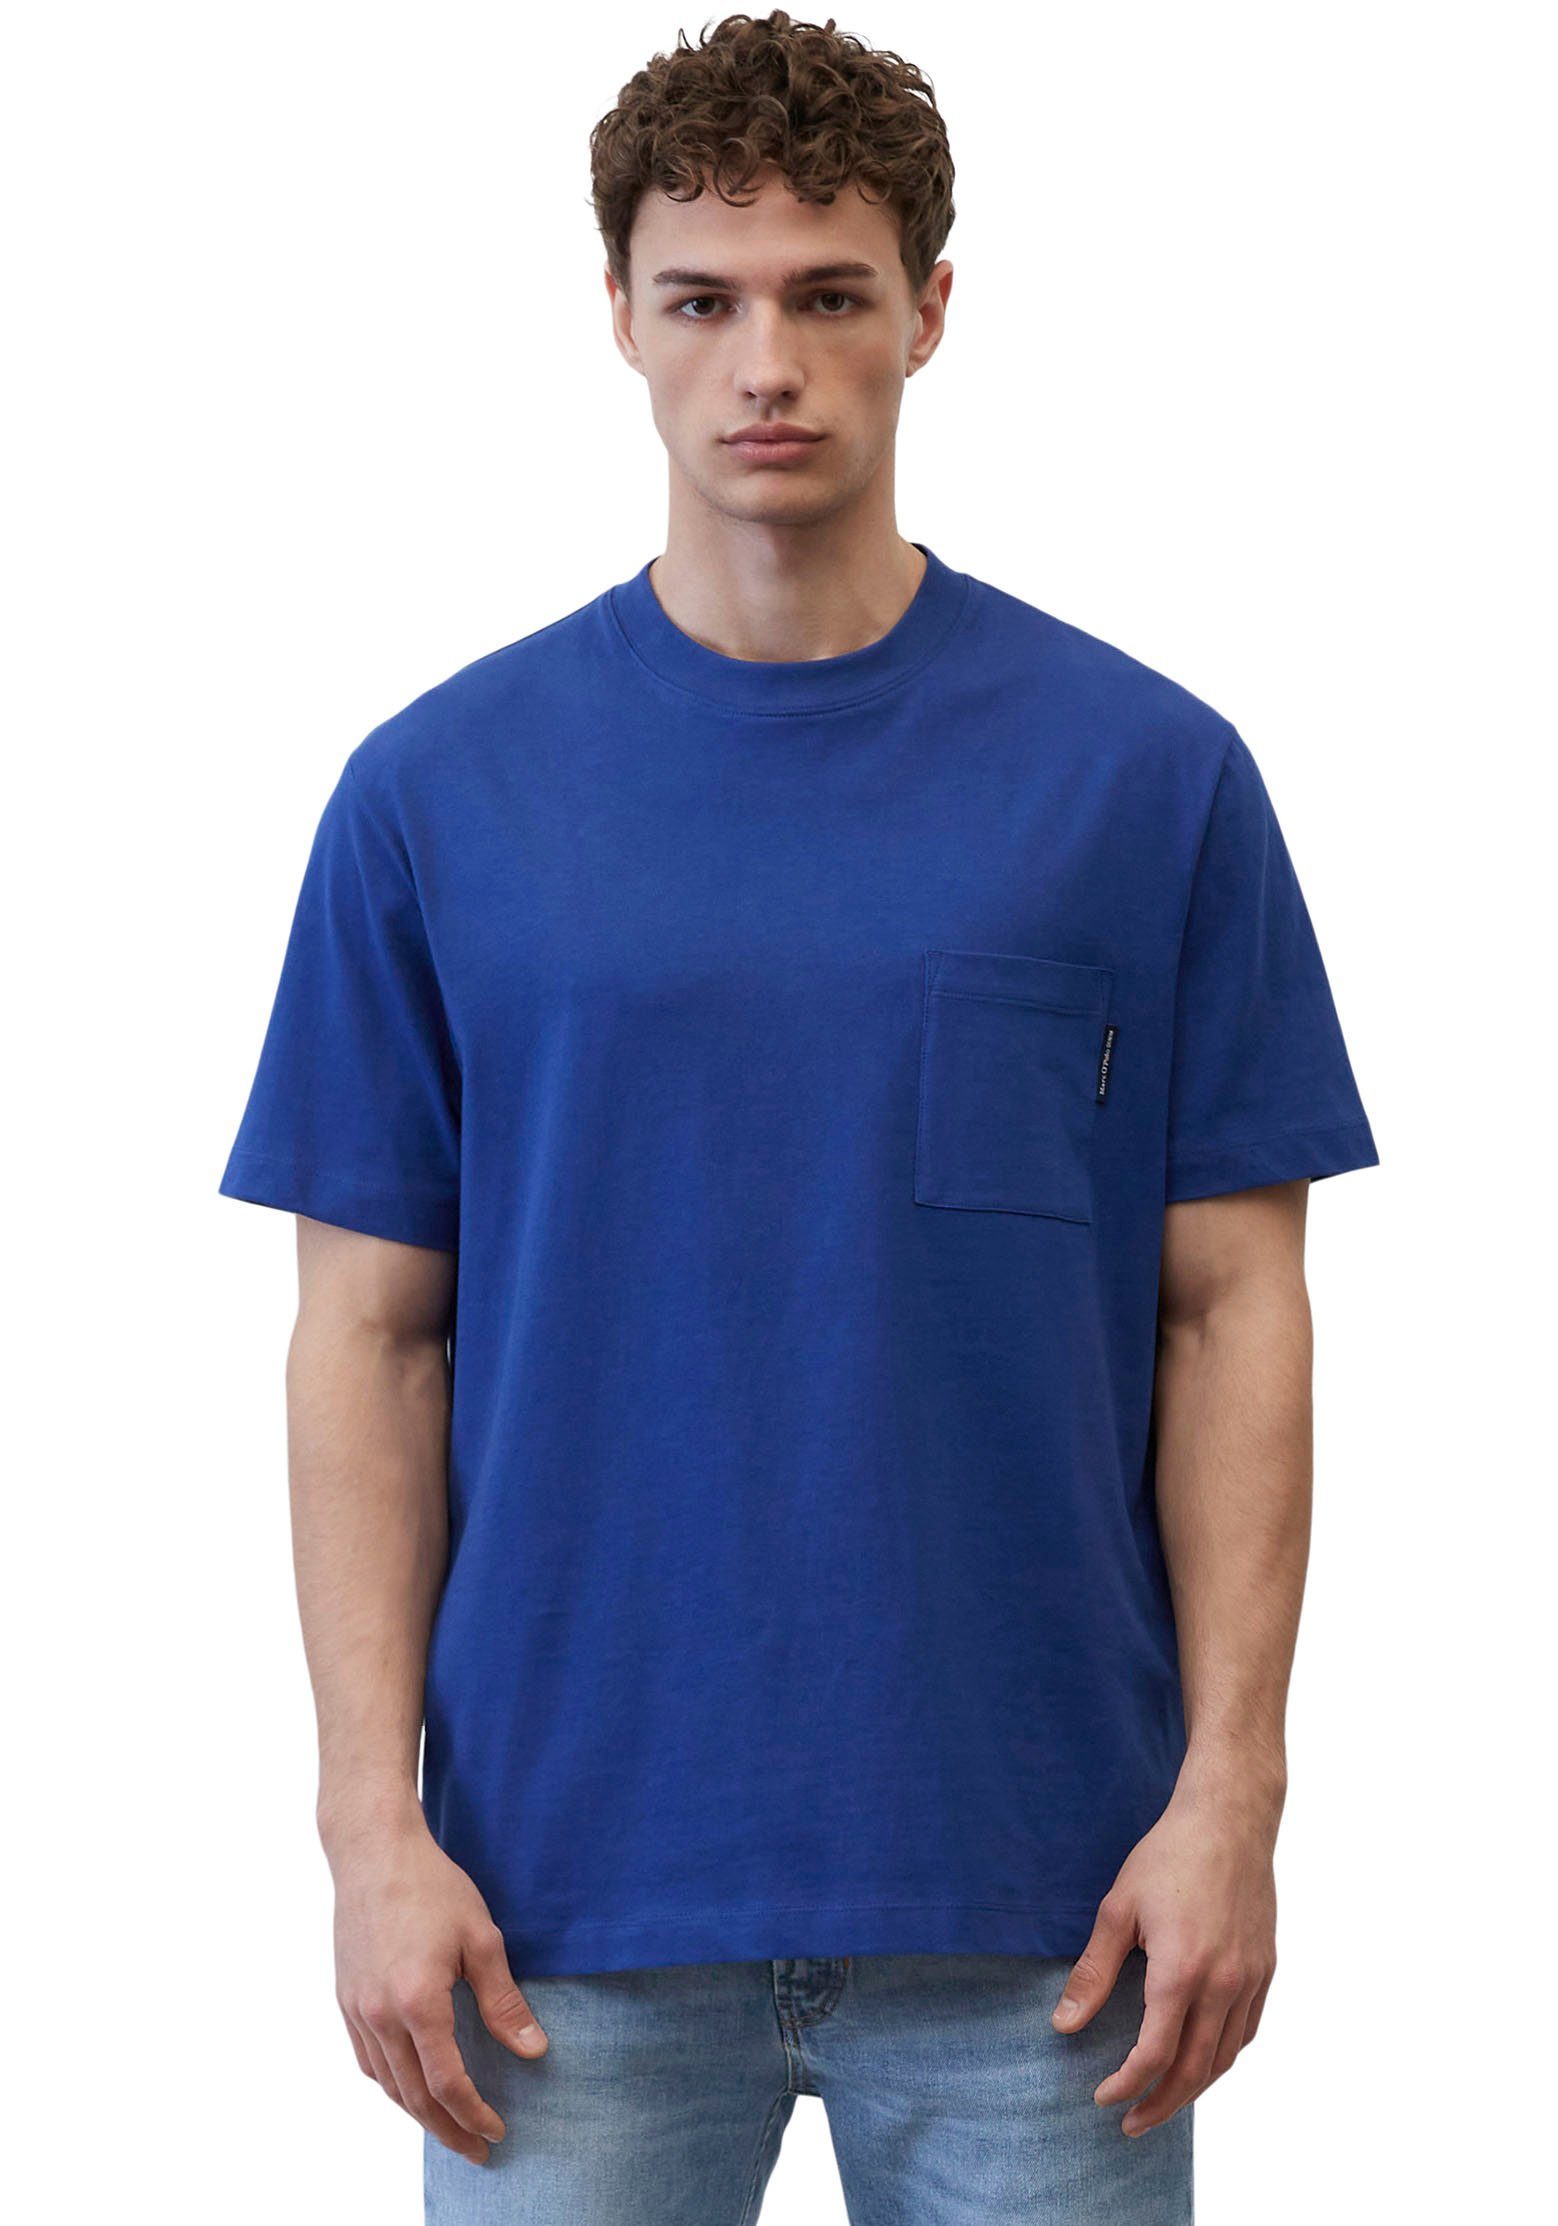 Brusttasche T-Shirt Marc DENIM aufgesetzter royalblau O'Polo mit